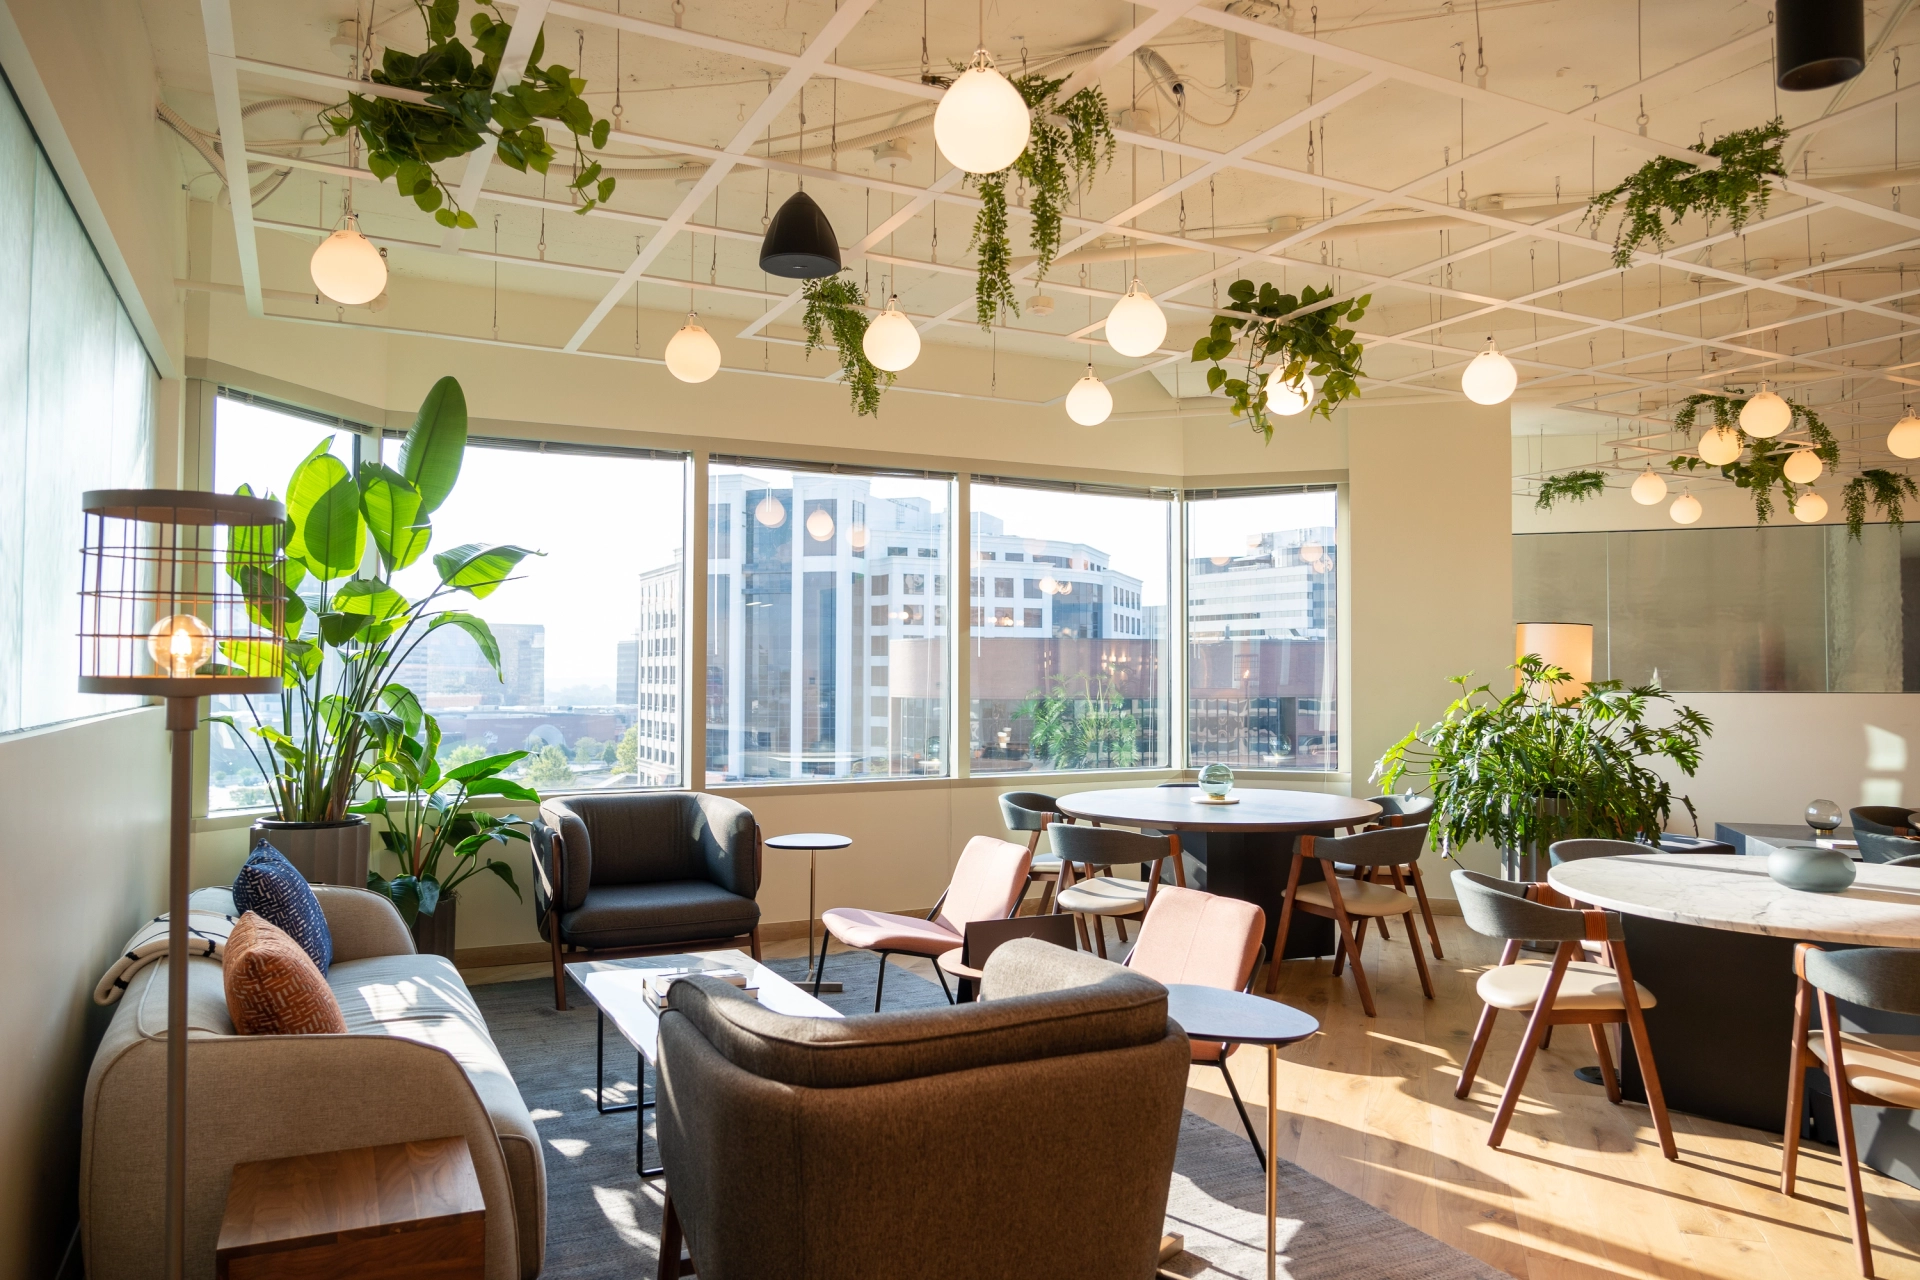 Une salle de réunion de coworking avec une abondance de plantes suspendues au plafond.